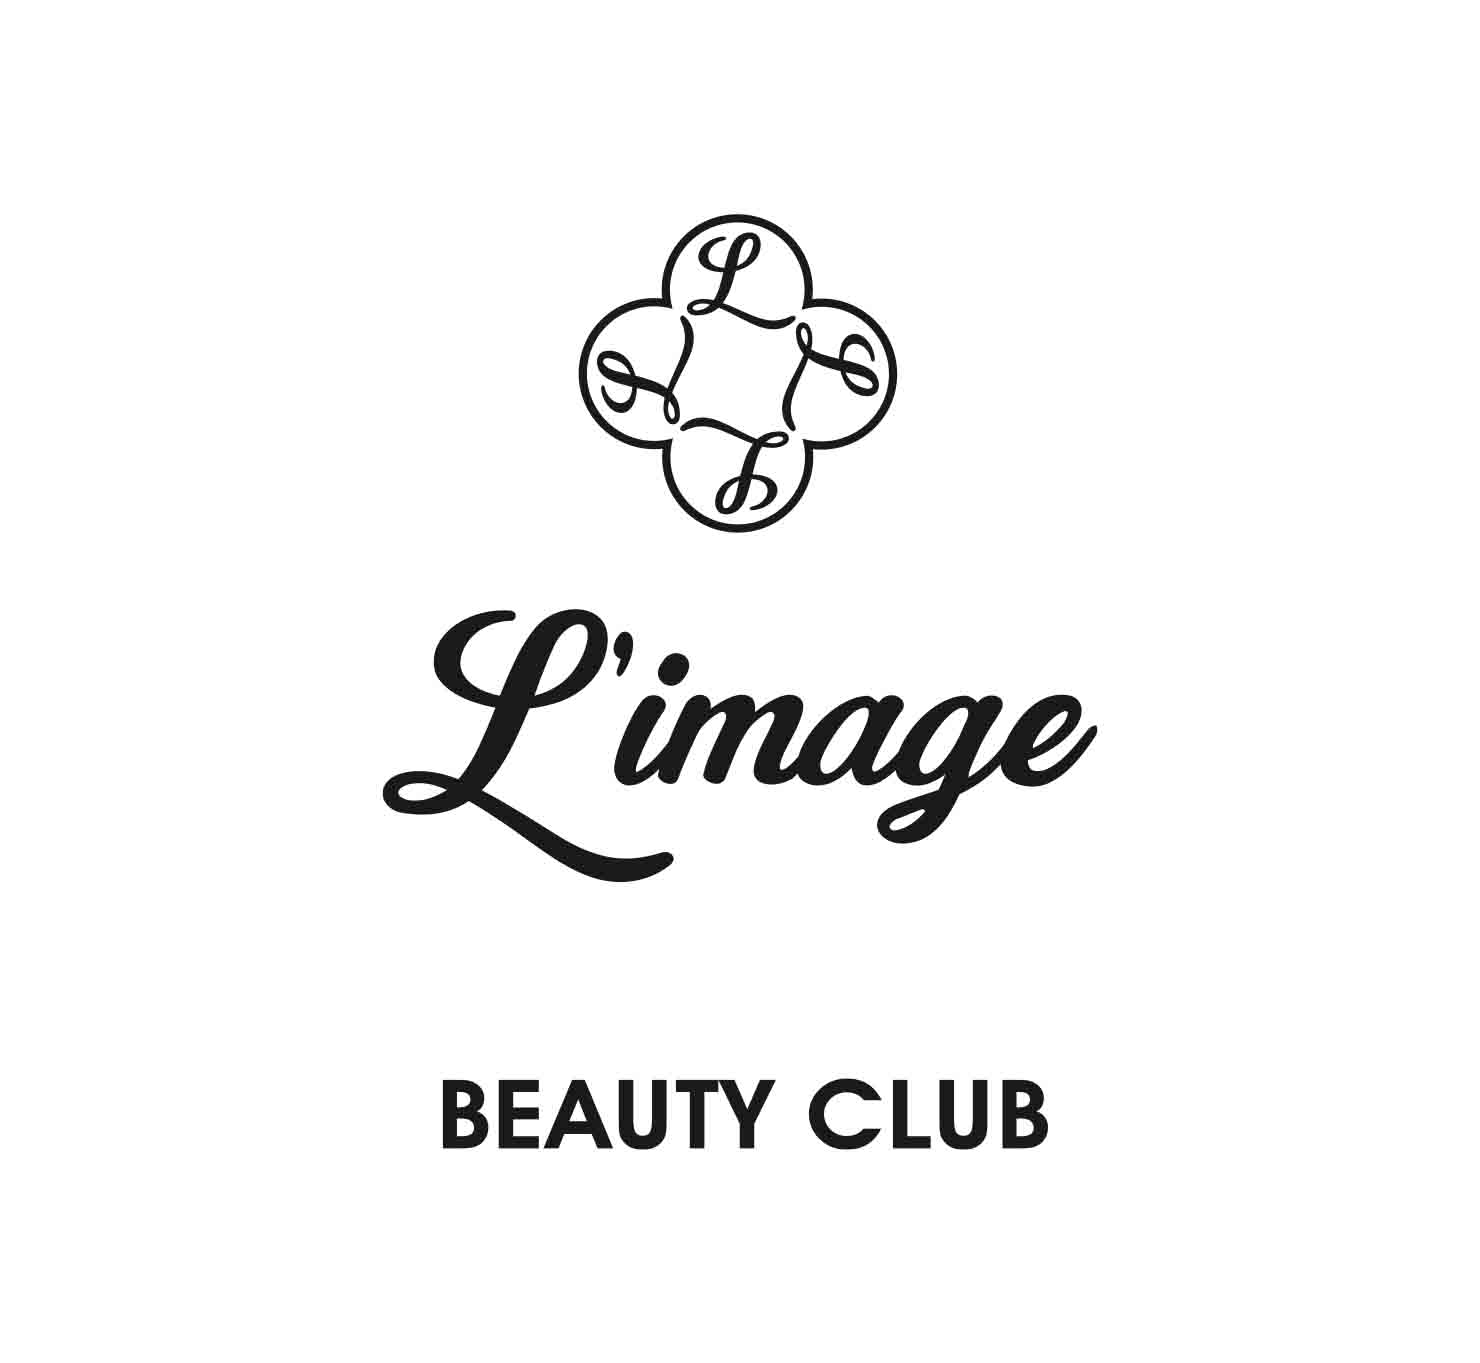 https://www.azalclub.az/az/company-detail/limage-beauty-club